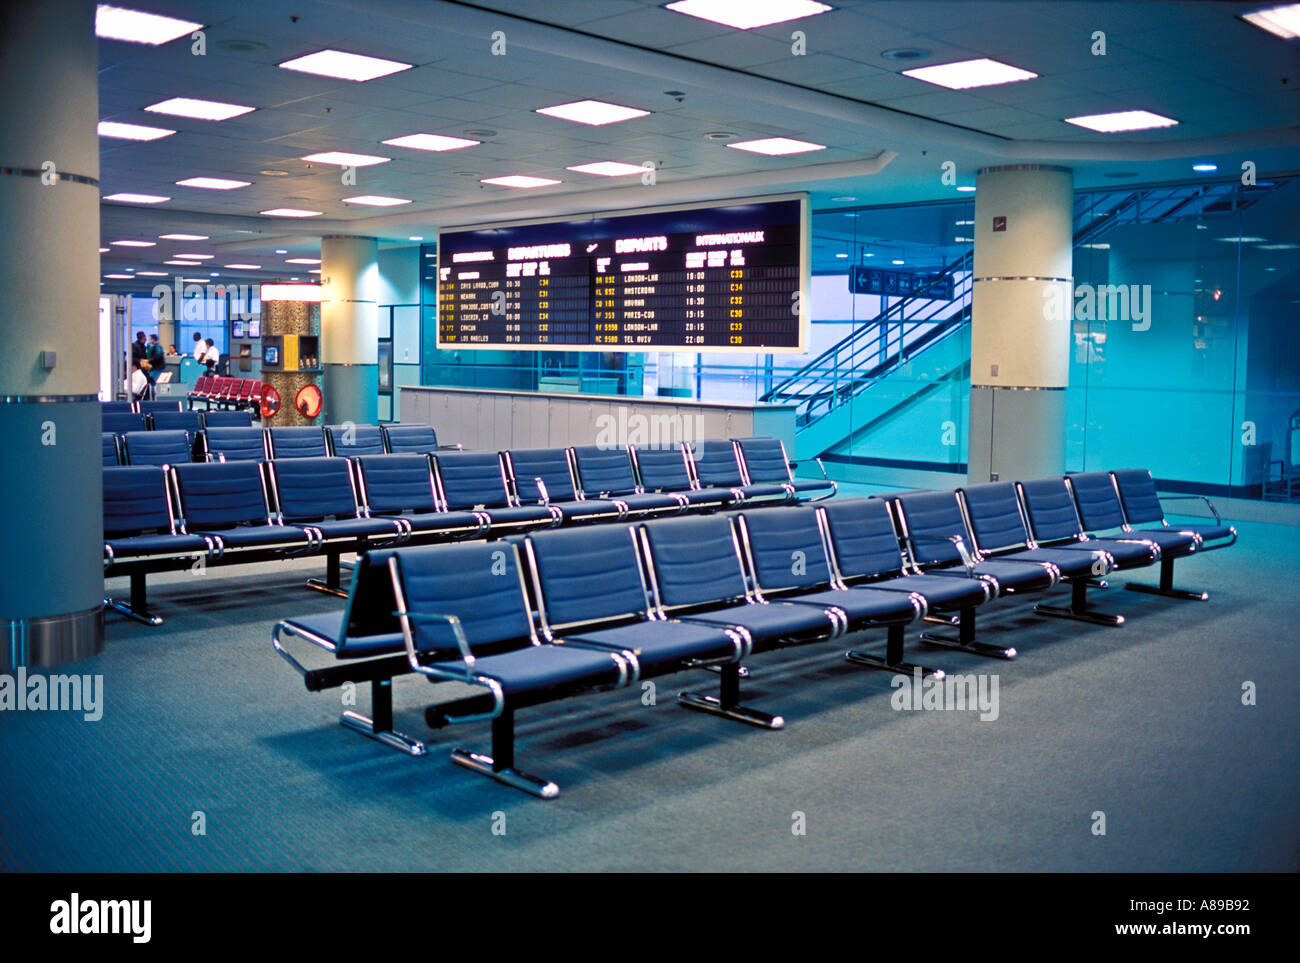 Canada Ontario Aeroporto Internazionale Pearson di Toronto vuoto lounge aeroportuale Foto Stock